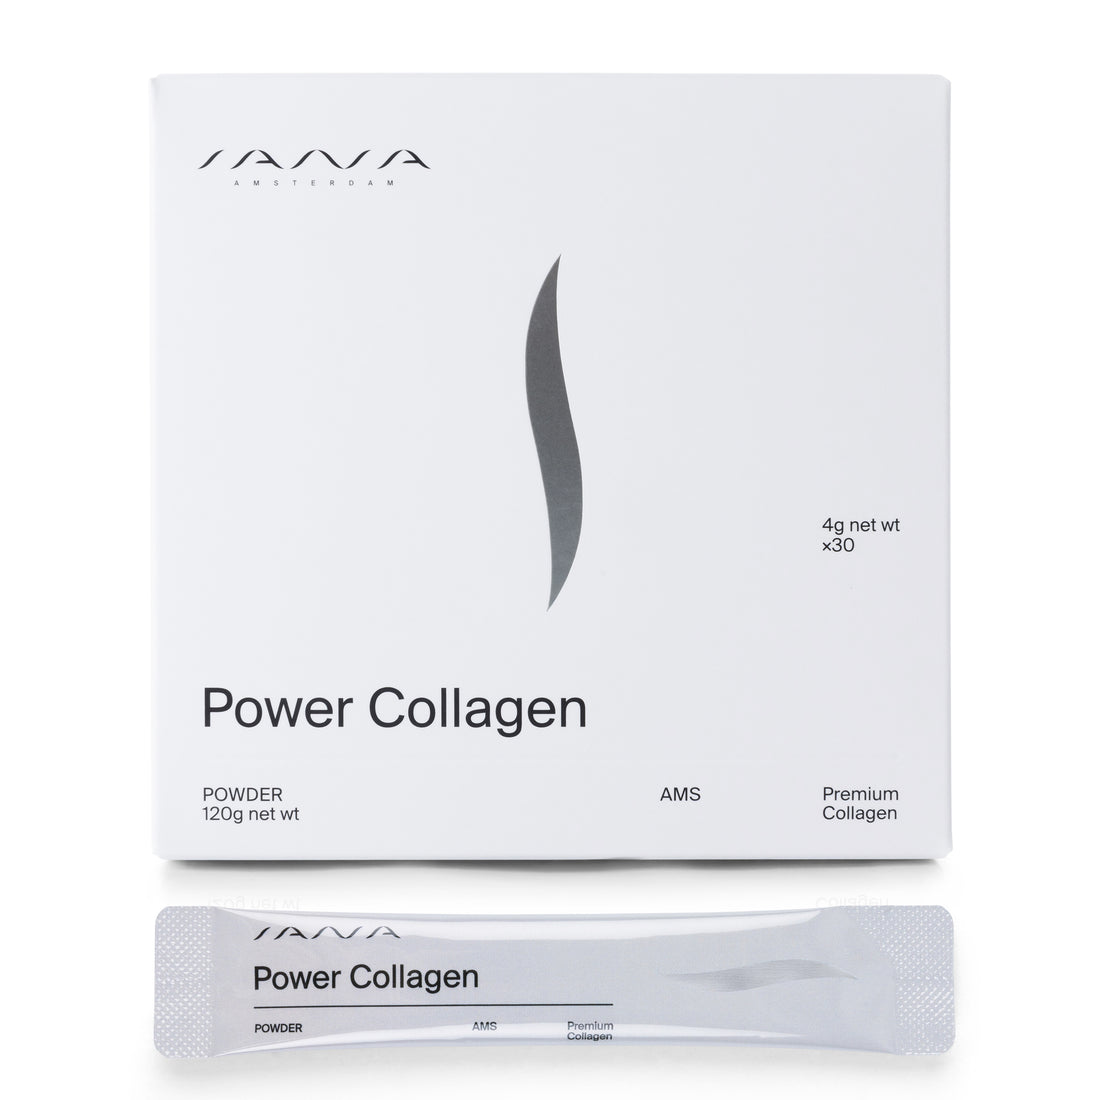 Power Collagen Powder